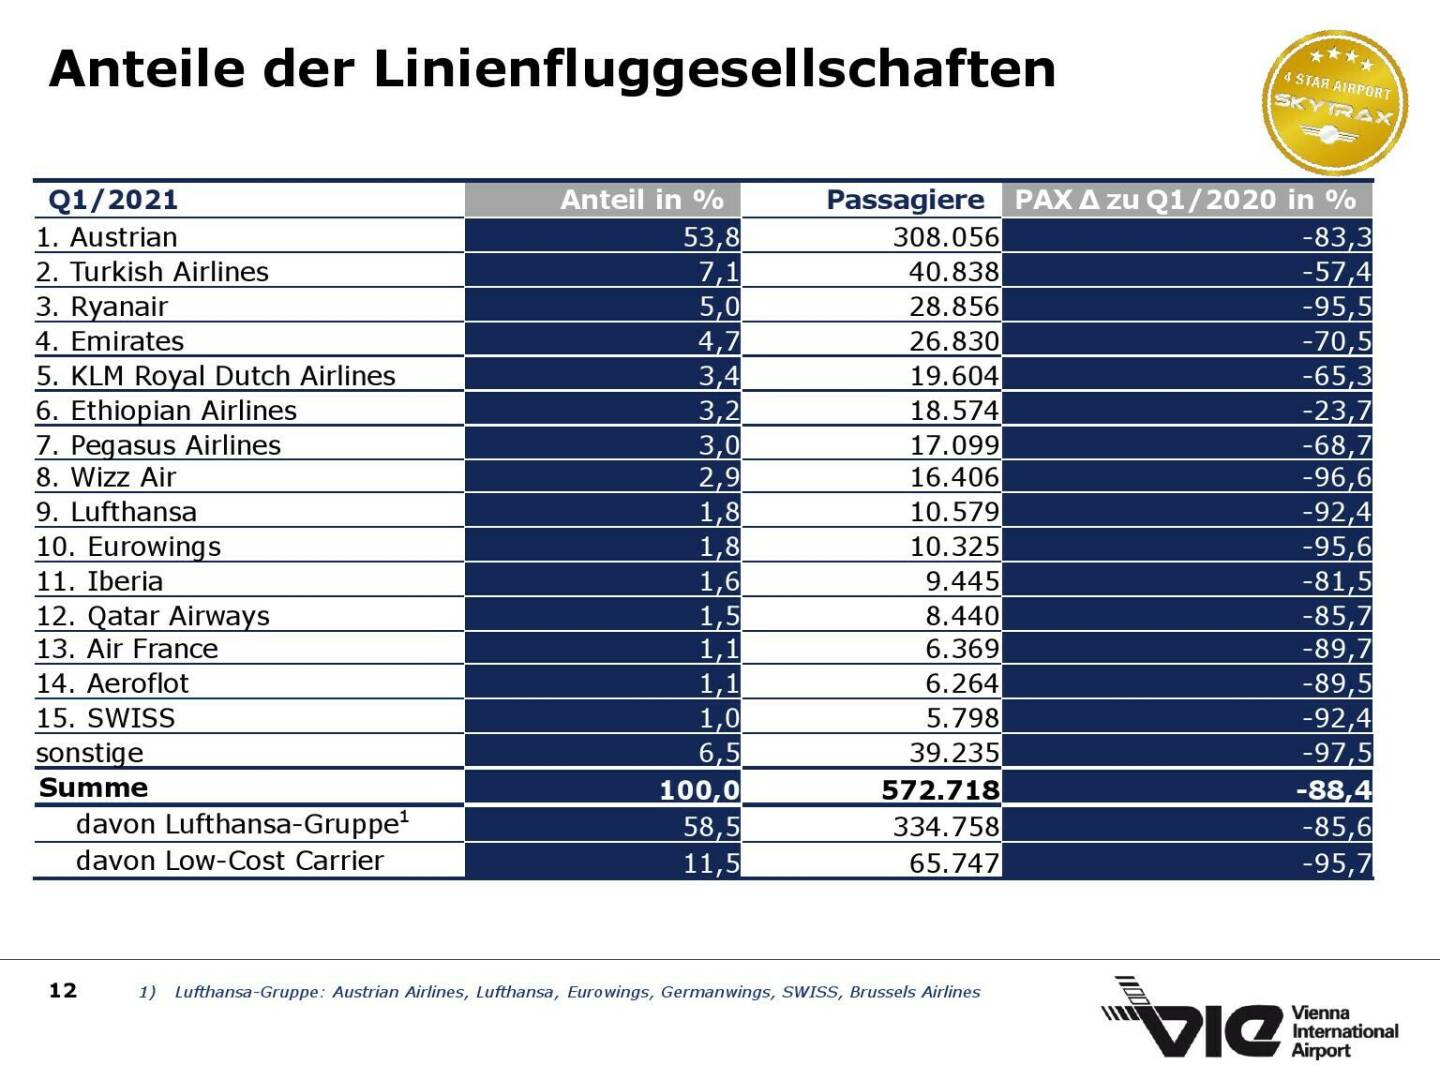 Flughafen Wien - Anteile der Linienfluggesellschaften 